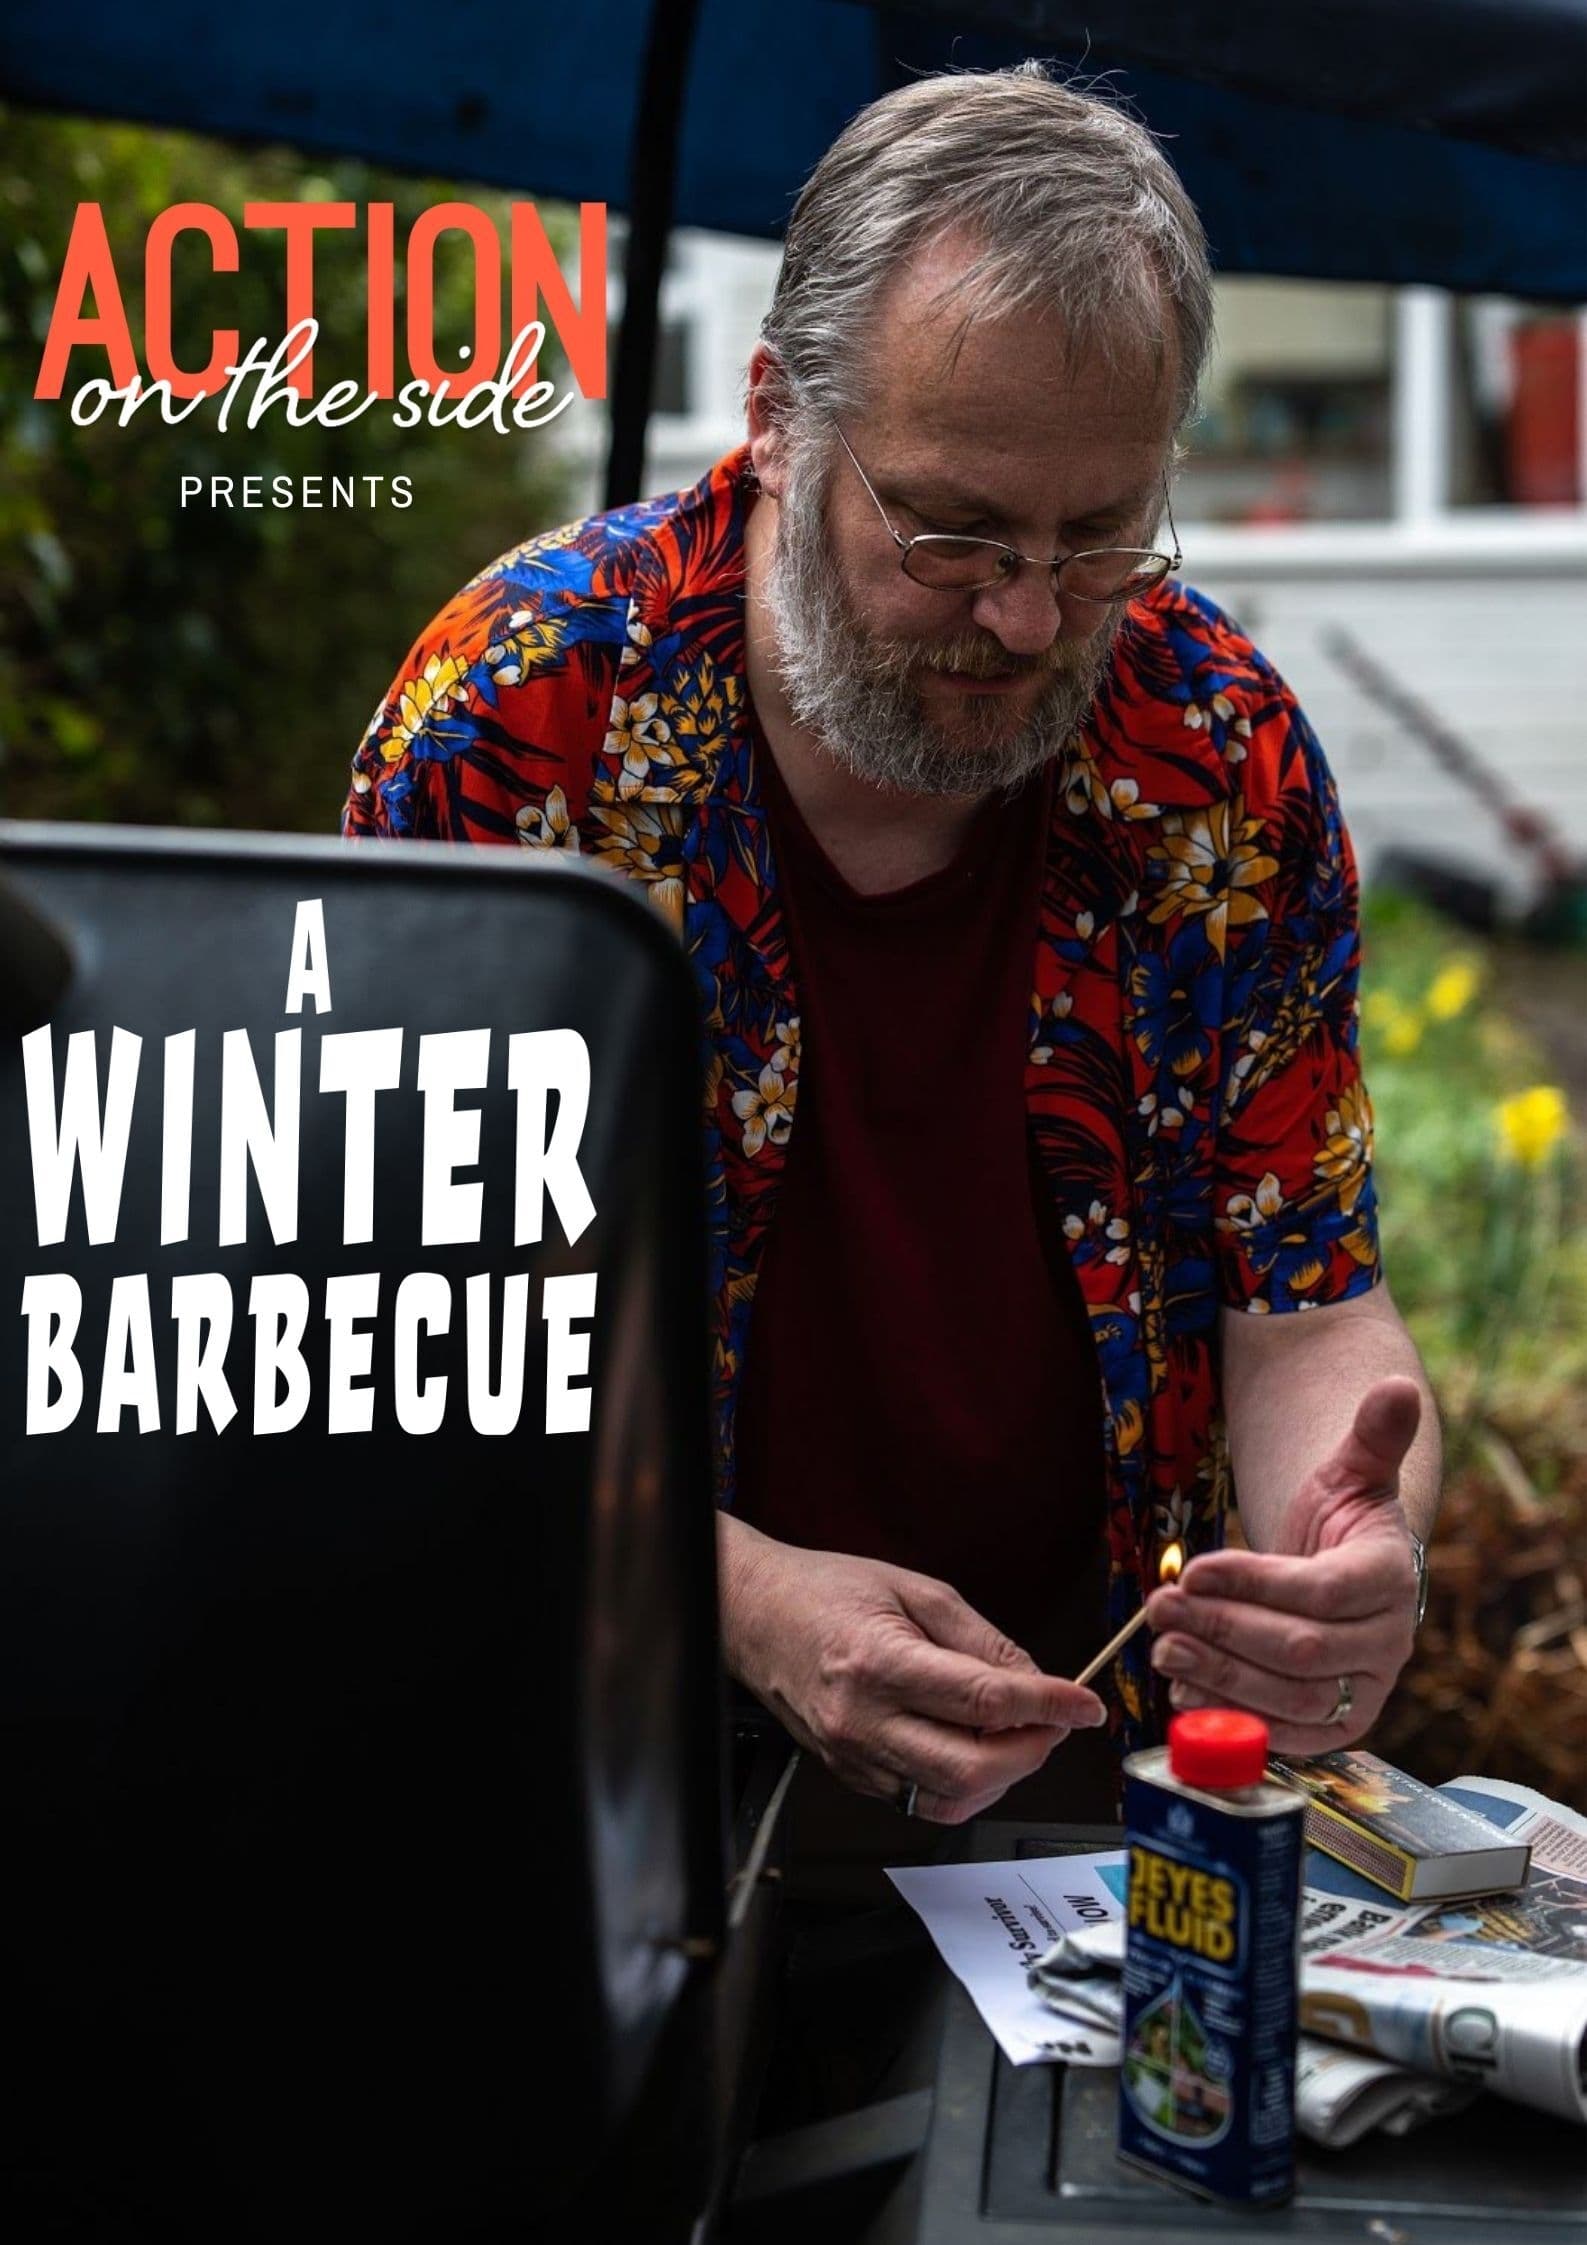 A Winter Barbecue